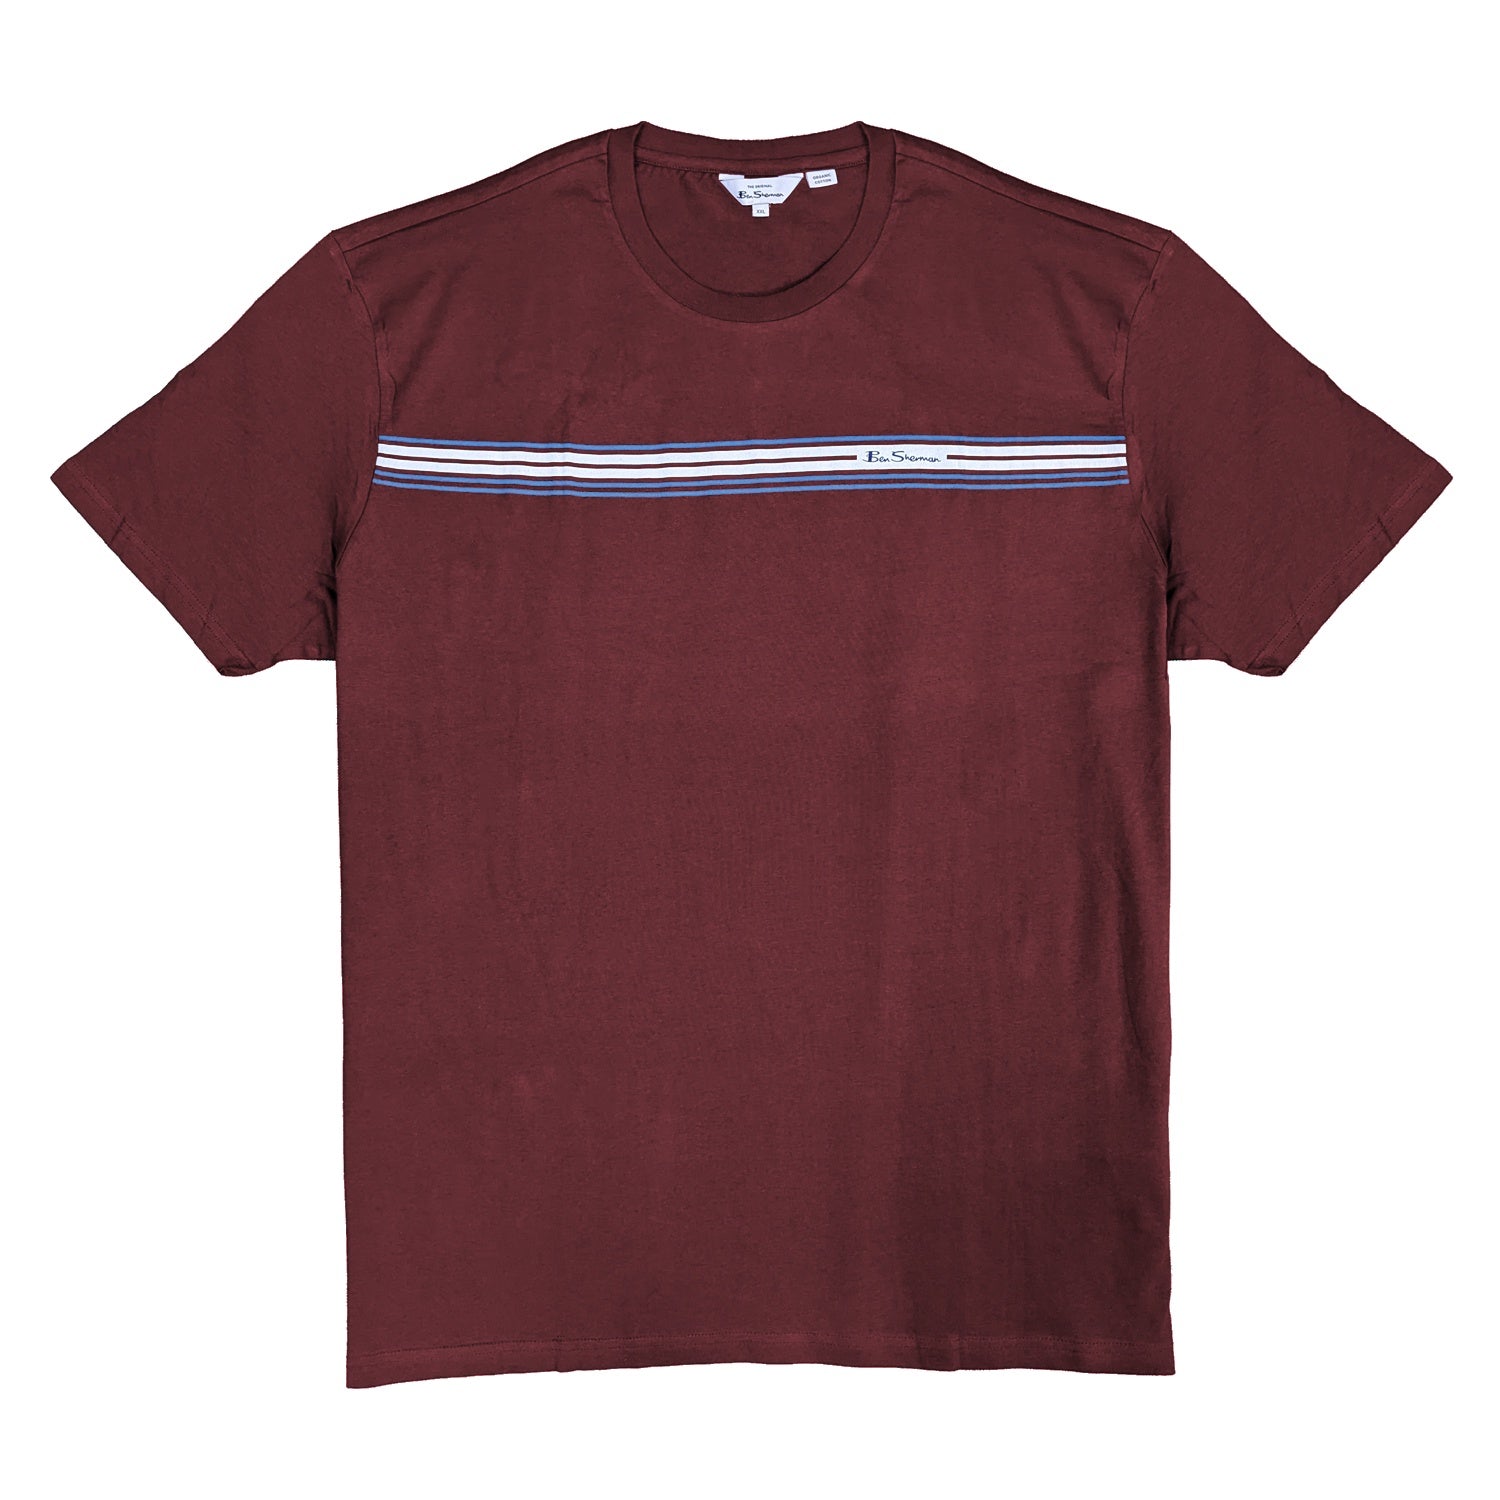 Ben Sherman T-Shirt - 0068146IL - Wine 1